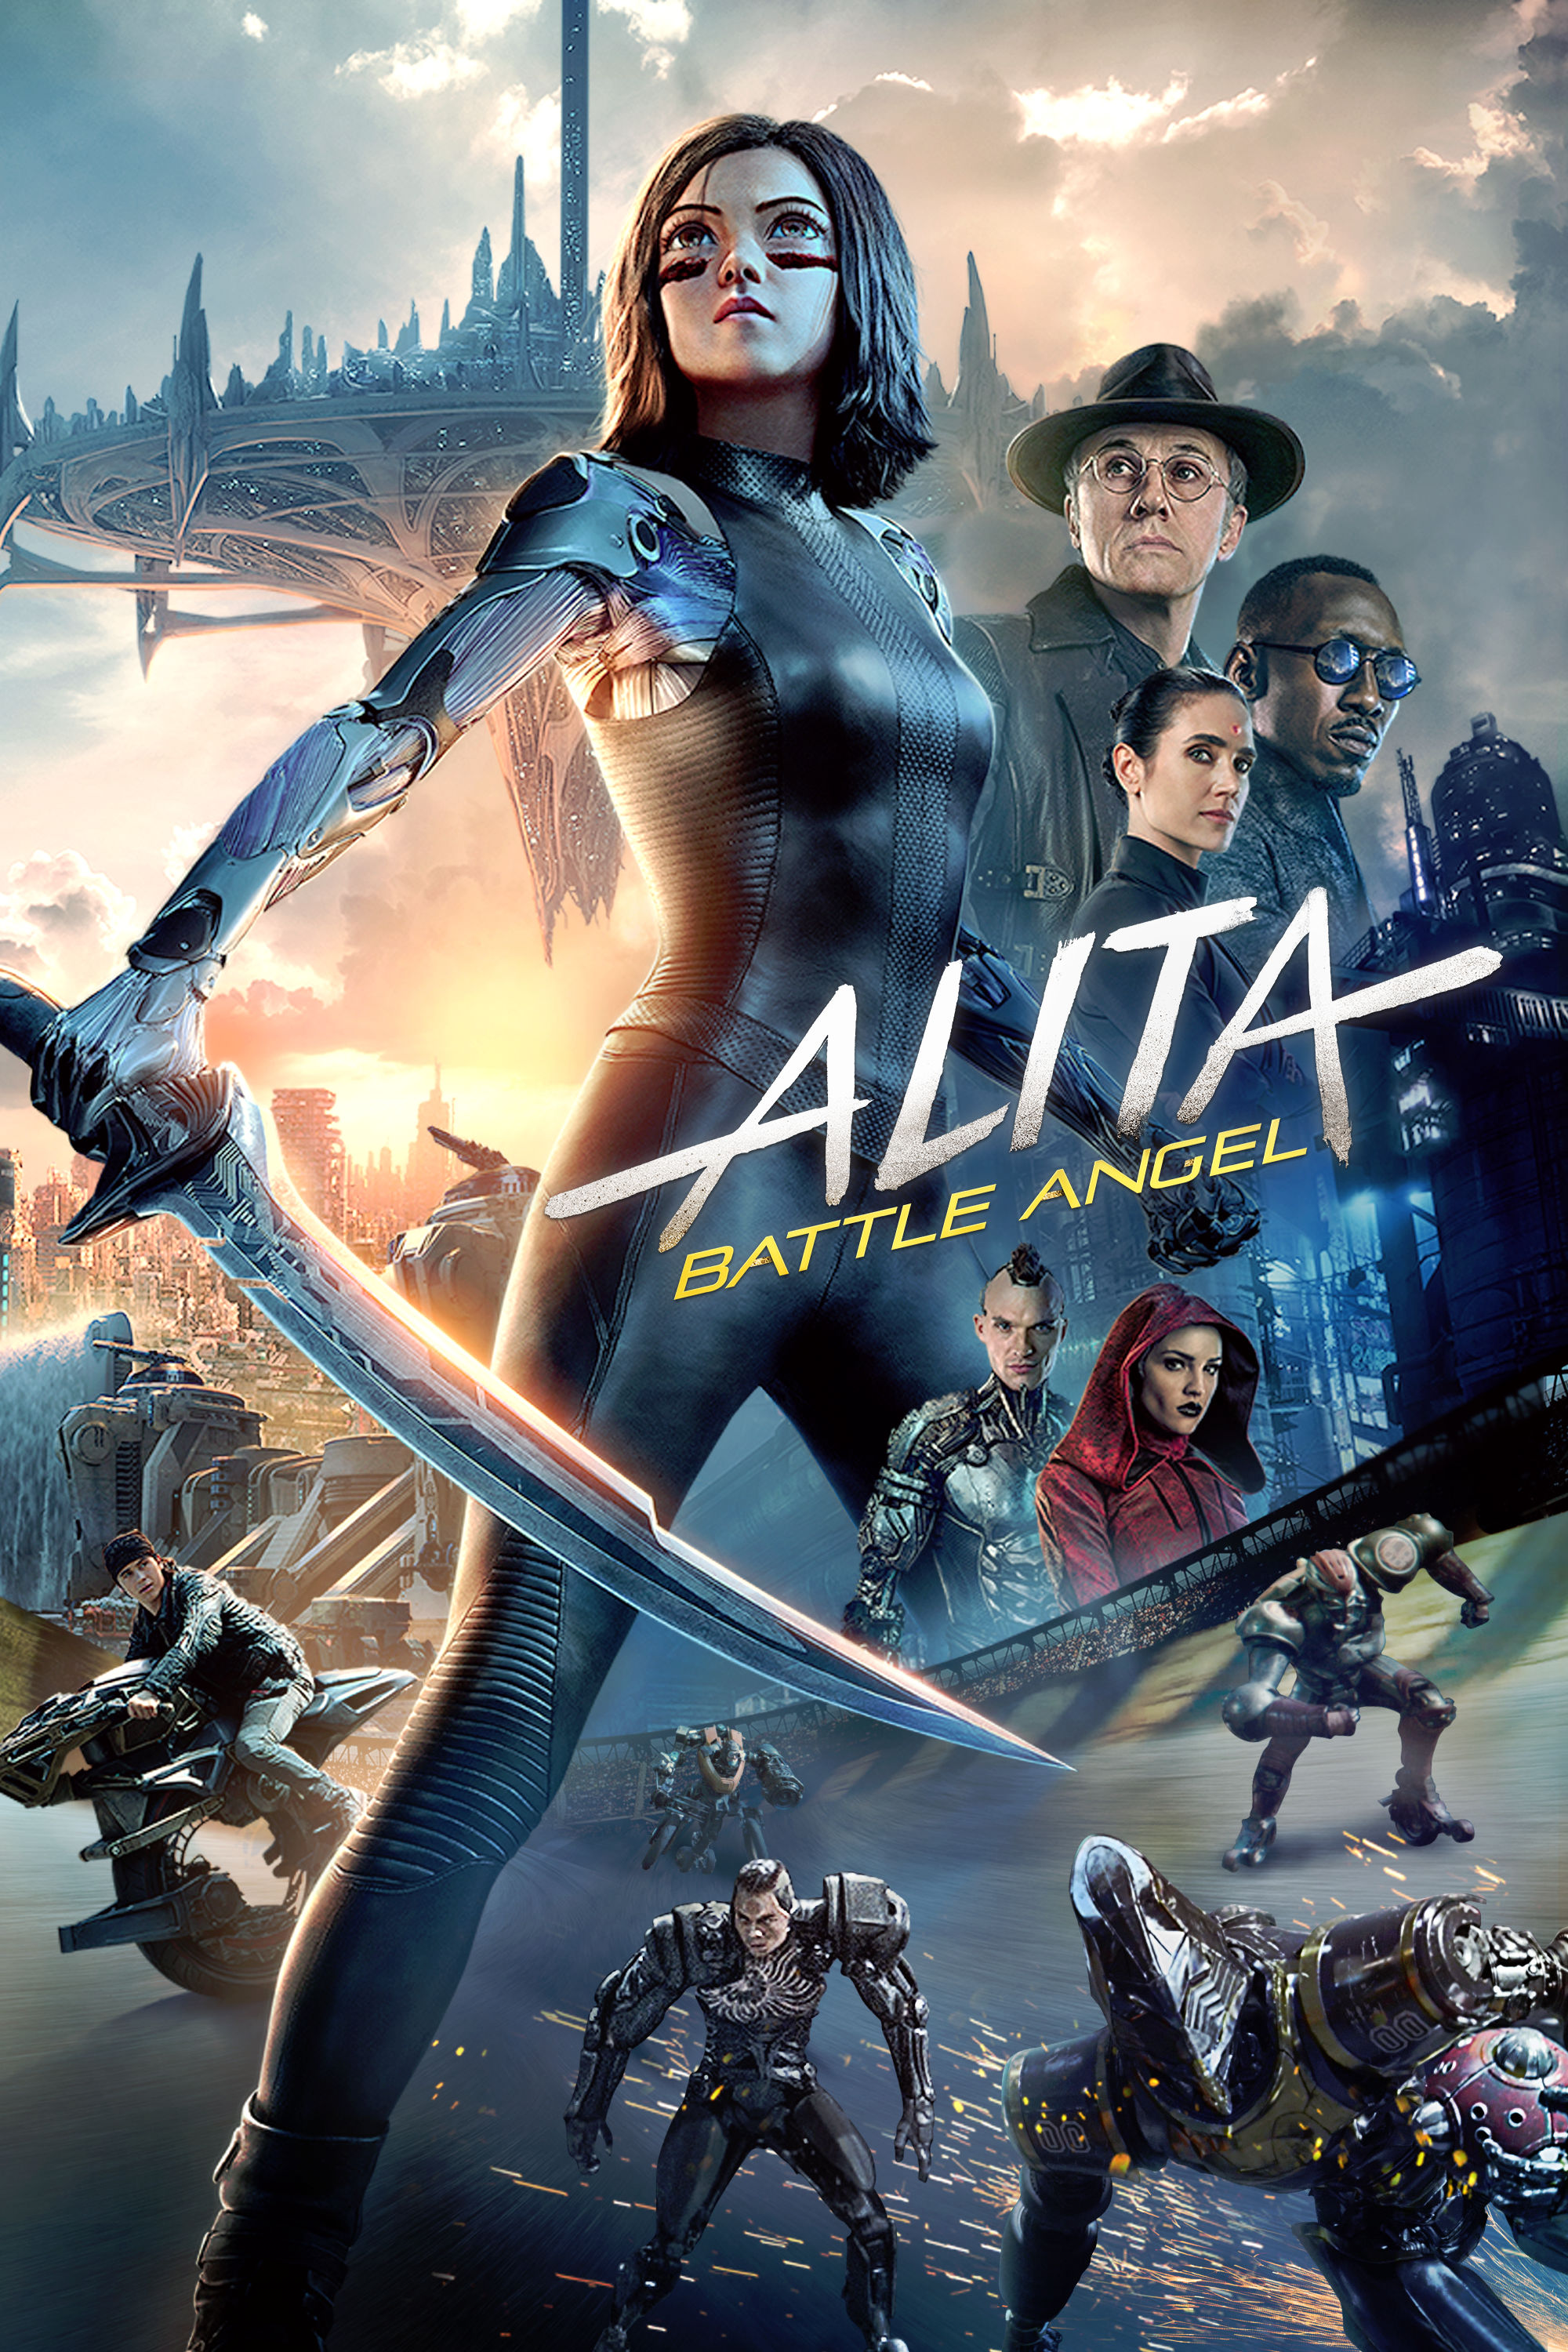 Alita - Battle Angel 2019 MOVIE DOWNLOAD